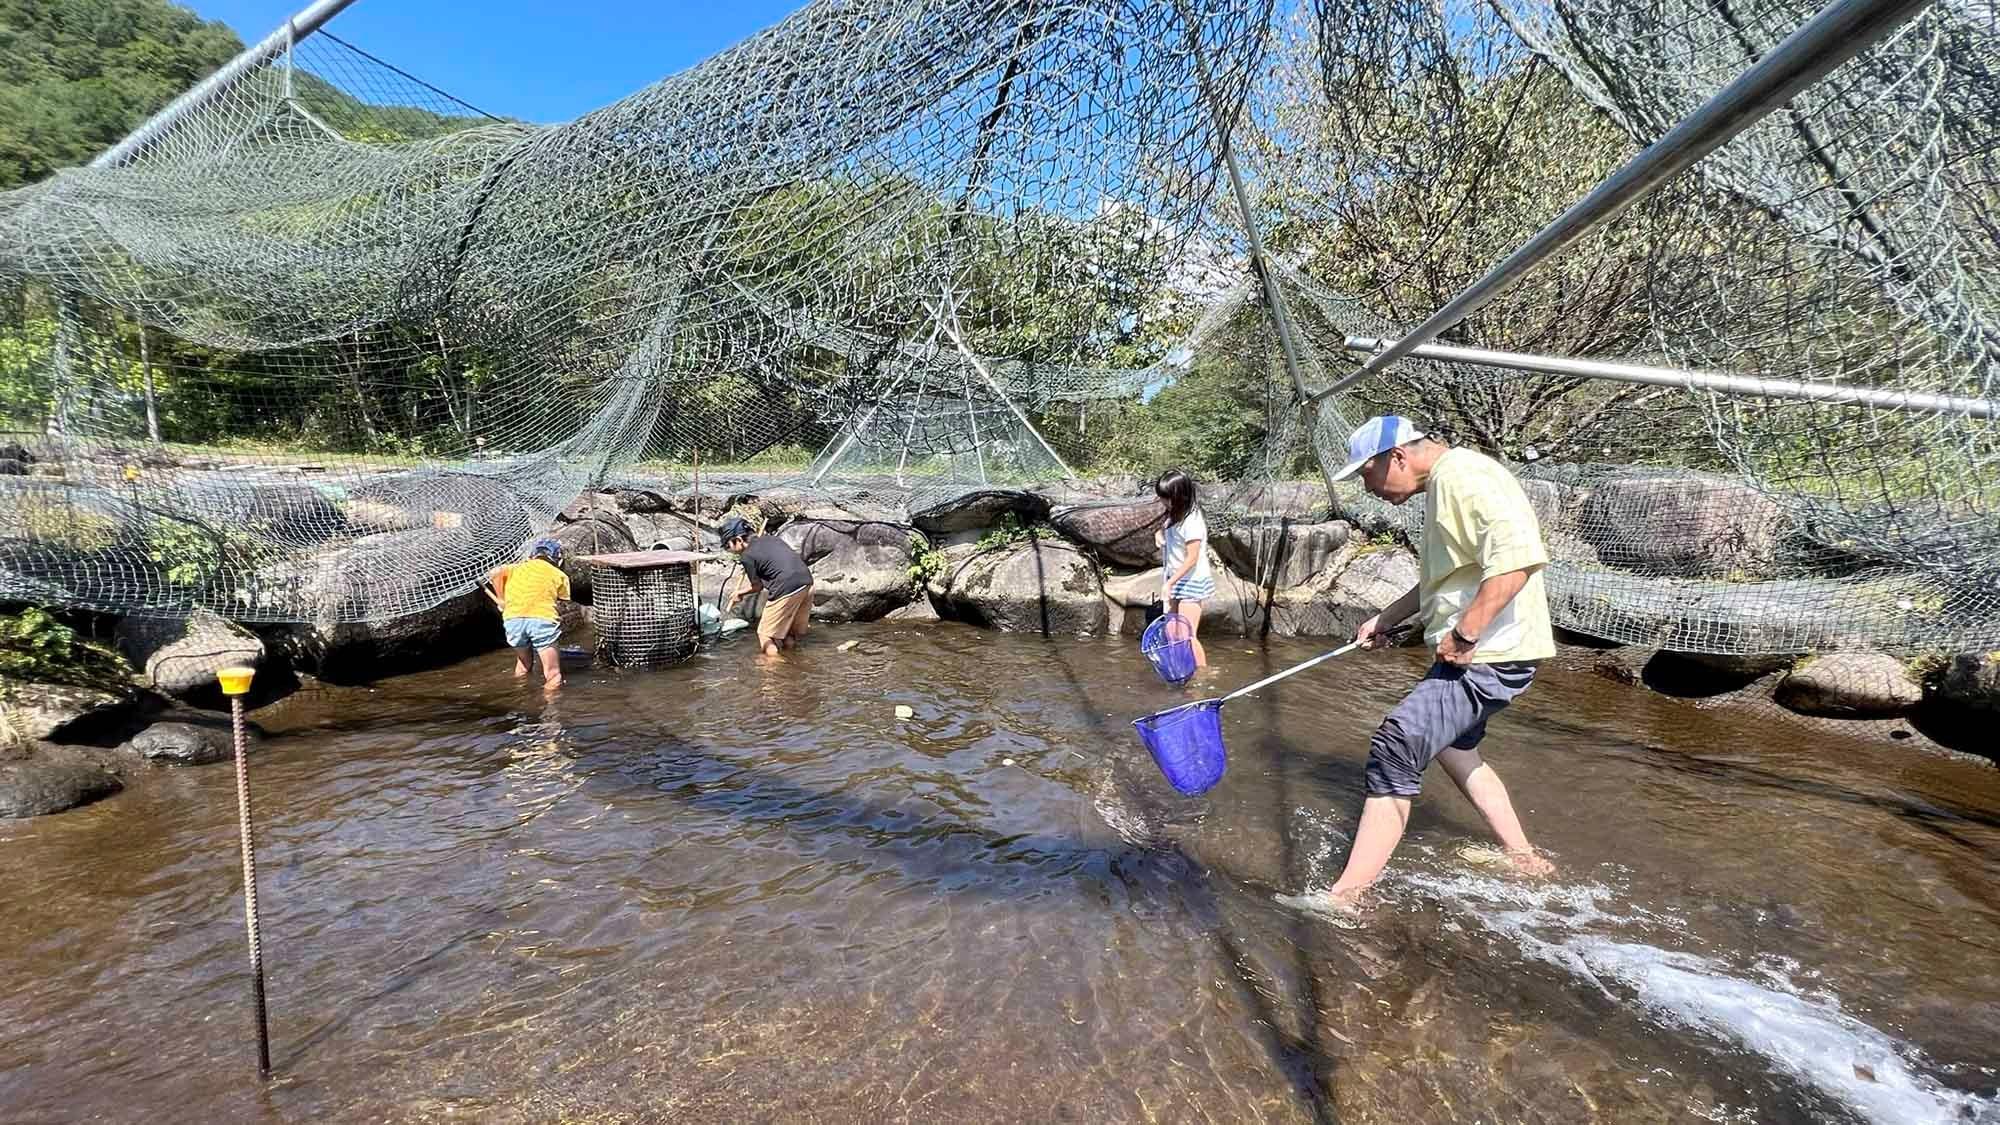 ・【釣り堀】釣り堀に放たれた川魚のつかみ取体験は、子どもから大人まで楽しめます